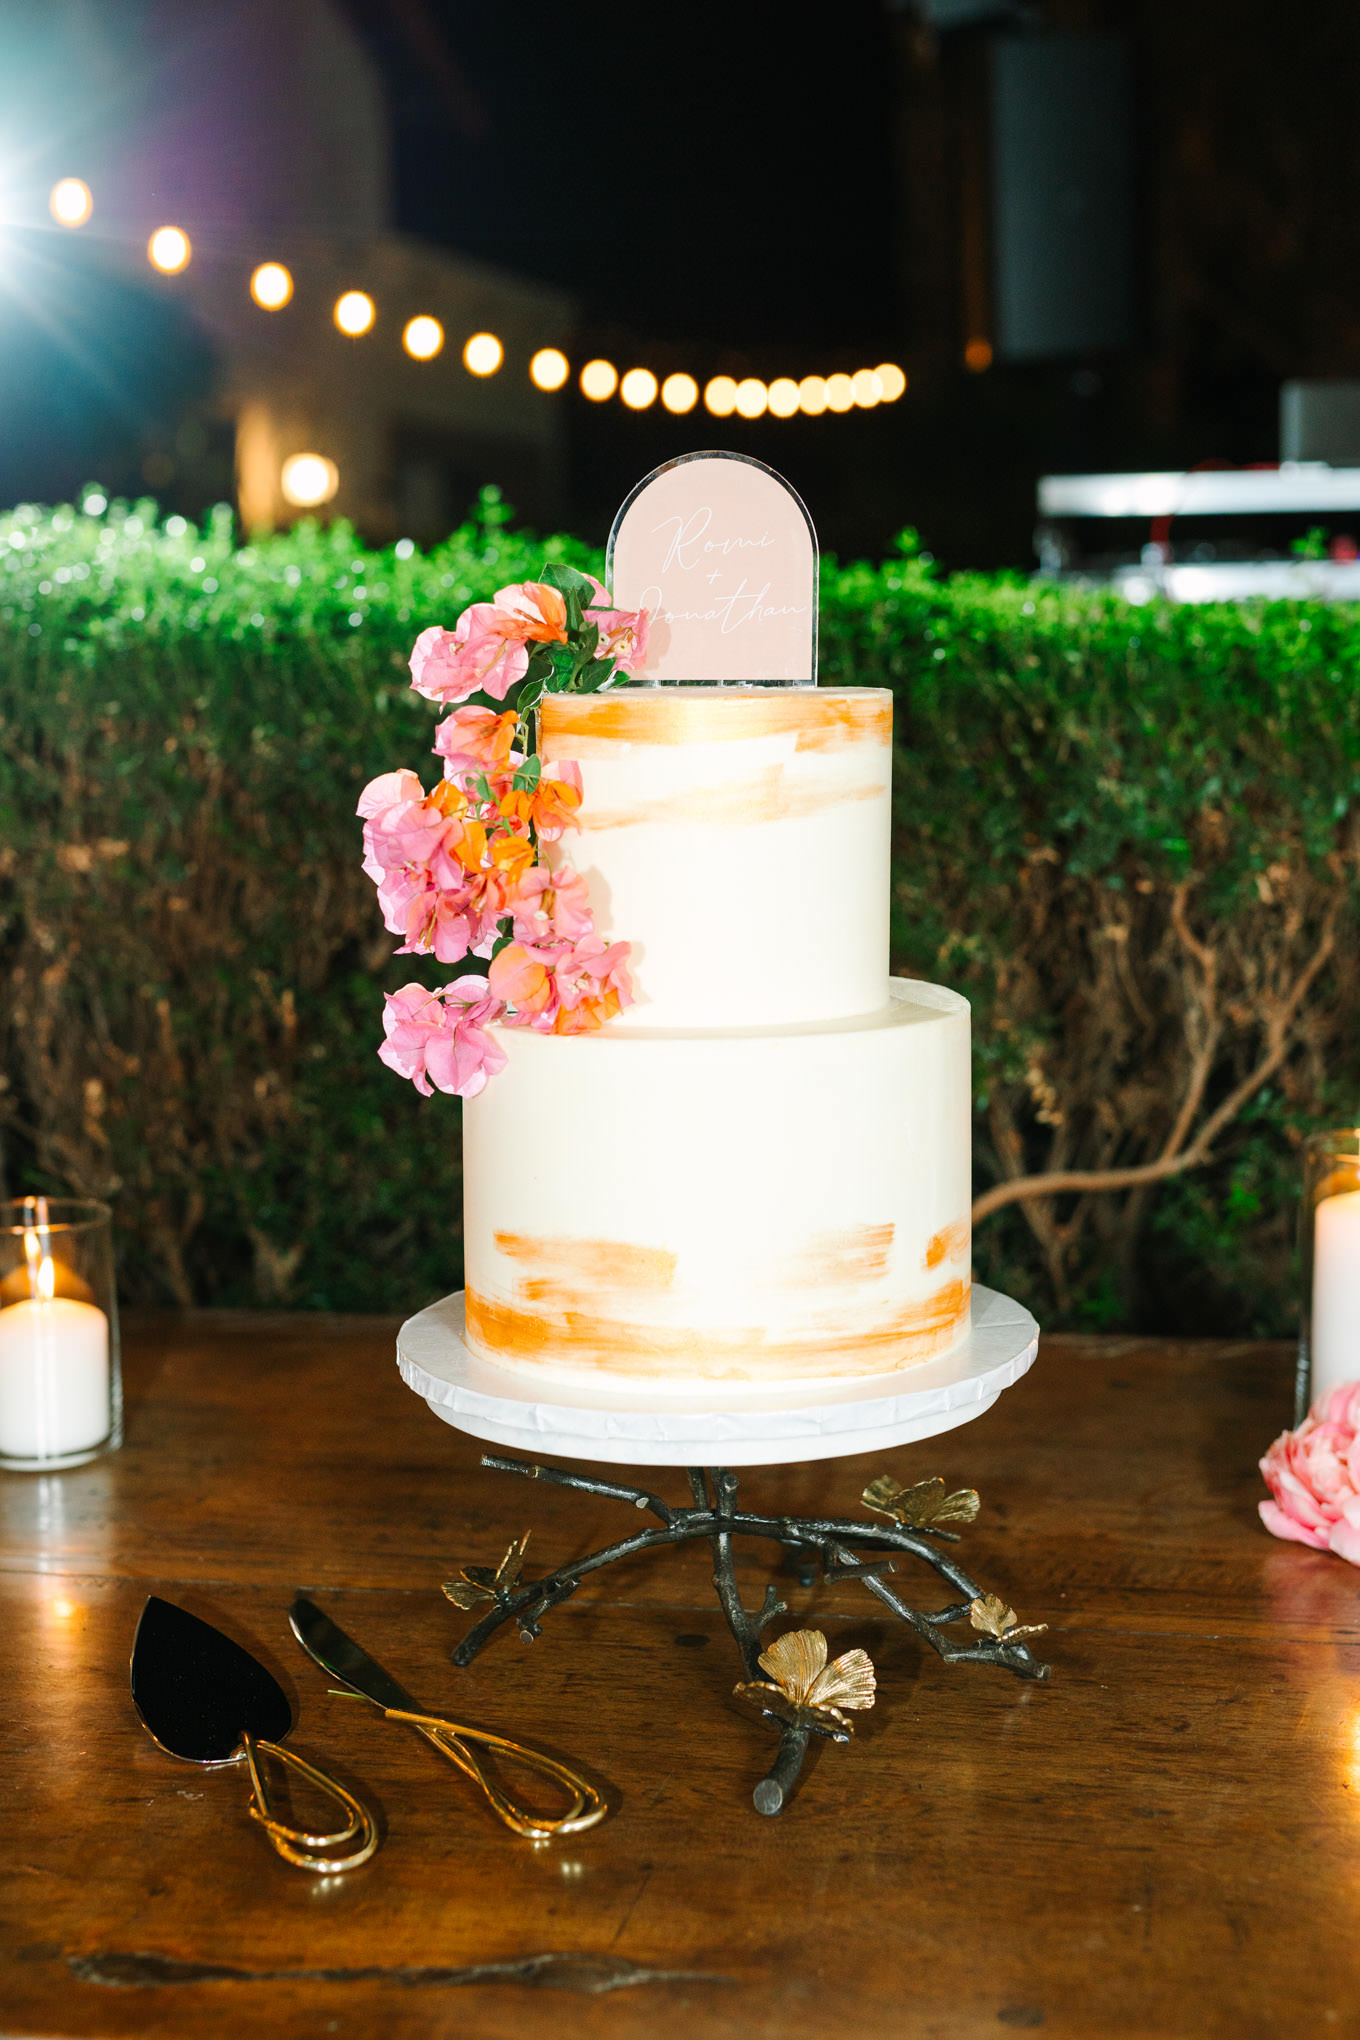 Wedding cake | Pink Bougainvillea Estate wedding | Colorful LA wedding photography | #bougainvilleaestate #palmspringswedding #palmspringsweddingvenue #palmspringsphotographer Source: Mary Costa Photography | Los Angeles